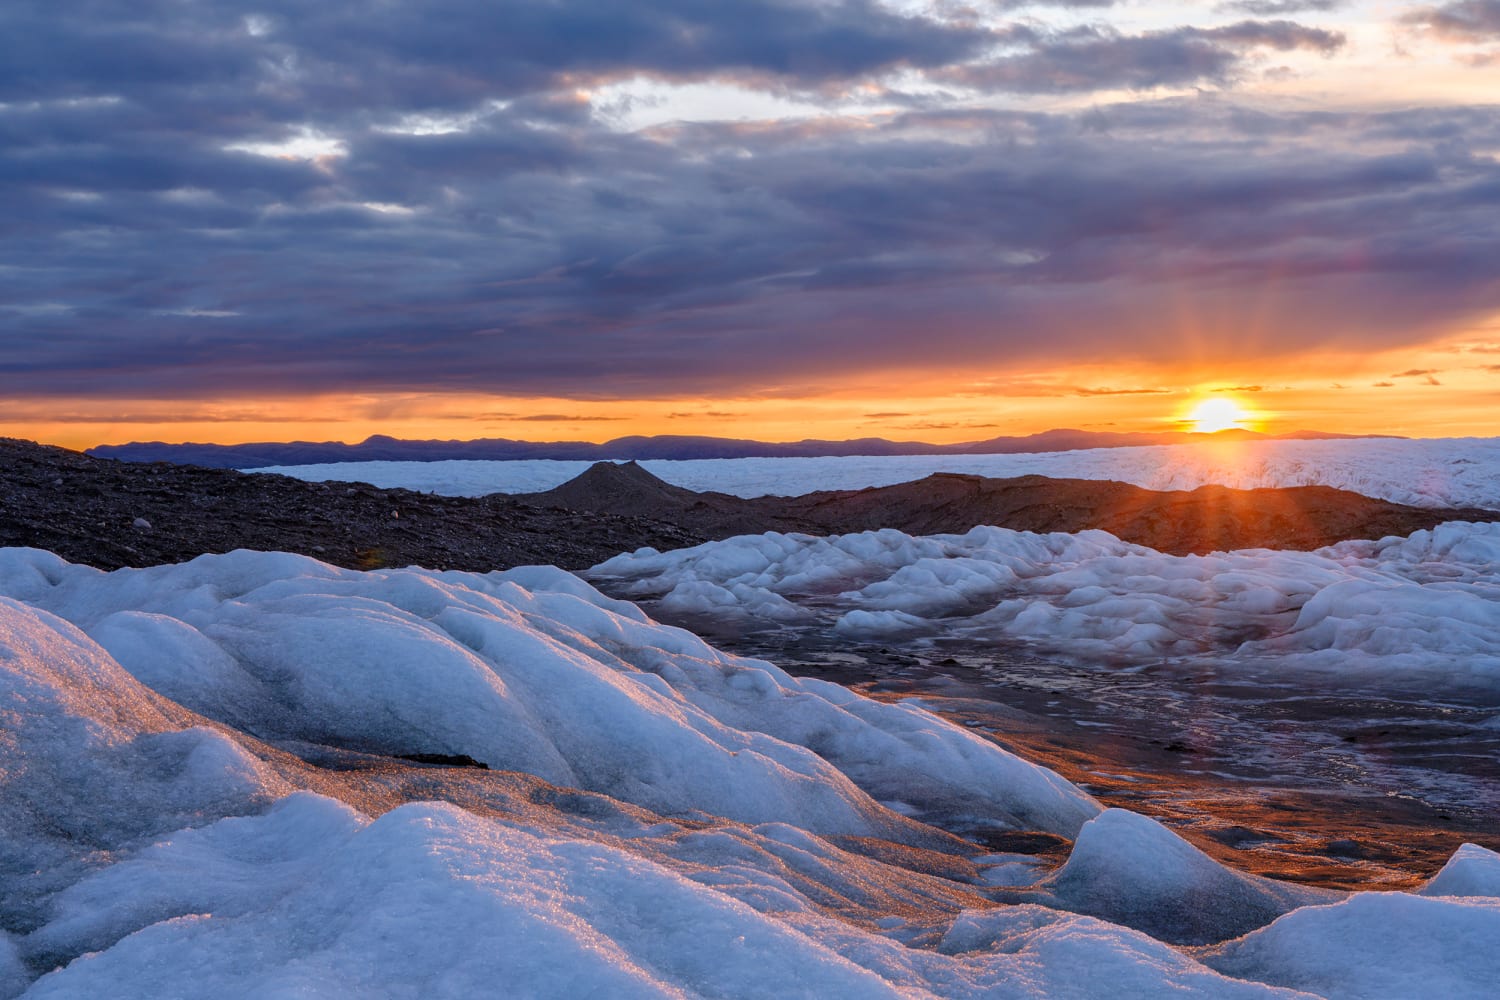 يؤدي ذوبان الجليد القطبي إلى إبطاء دوران الأرض وقد يؤثر على الطقس